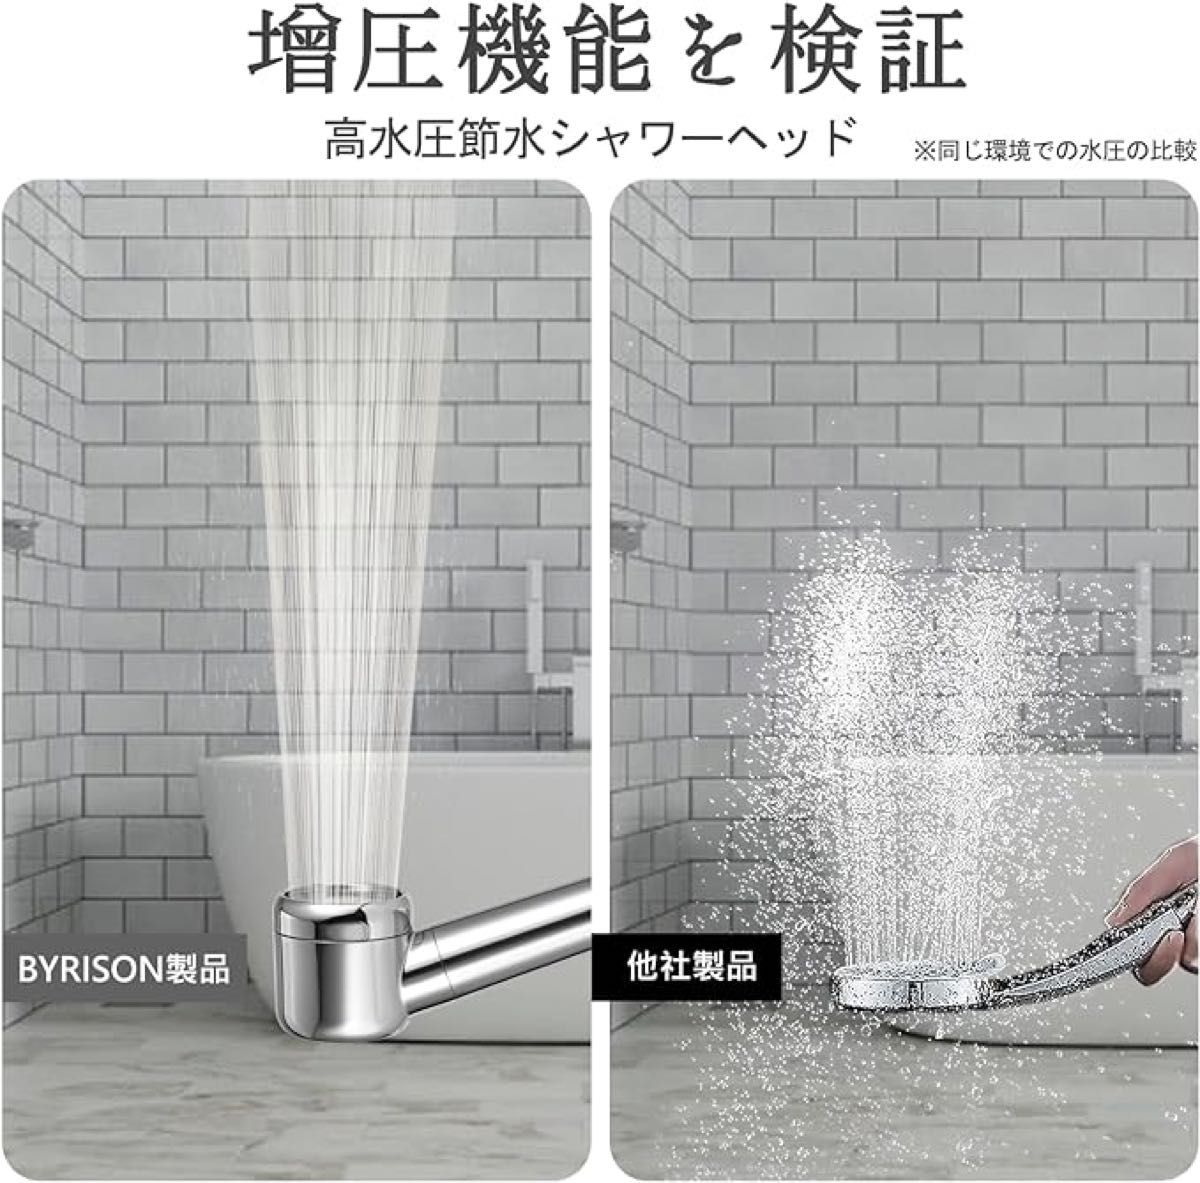 シャワーヘッド 98.97% 塩素除去 節水 高洗浄力 低水圧用 高水圧 超強力 極細水流 3種類アダプター M/K/G G1/2